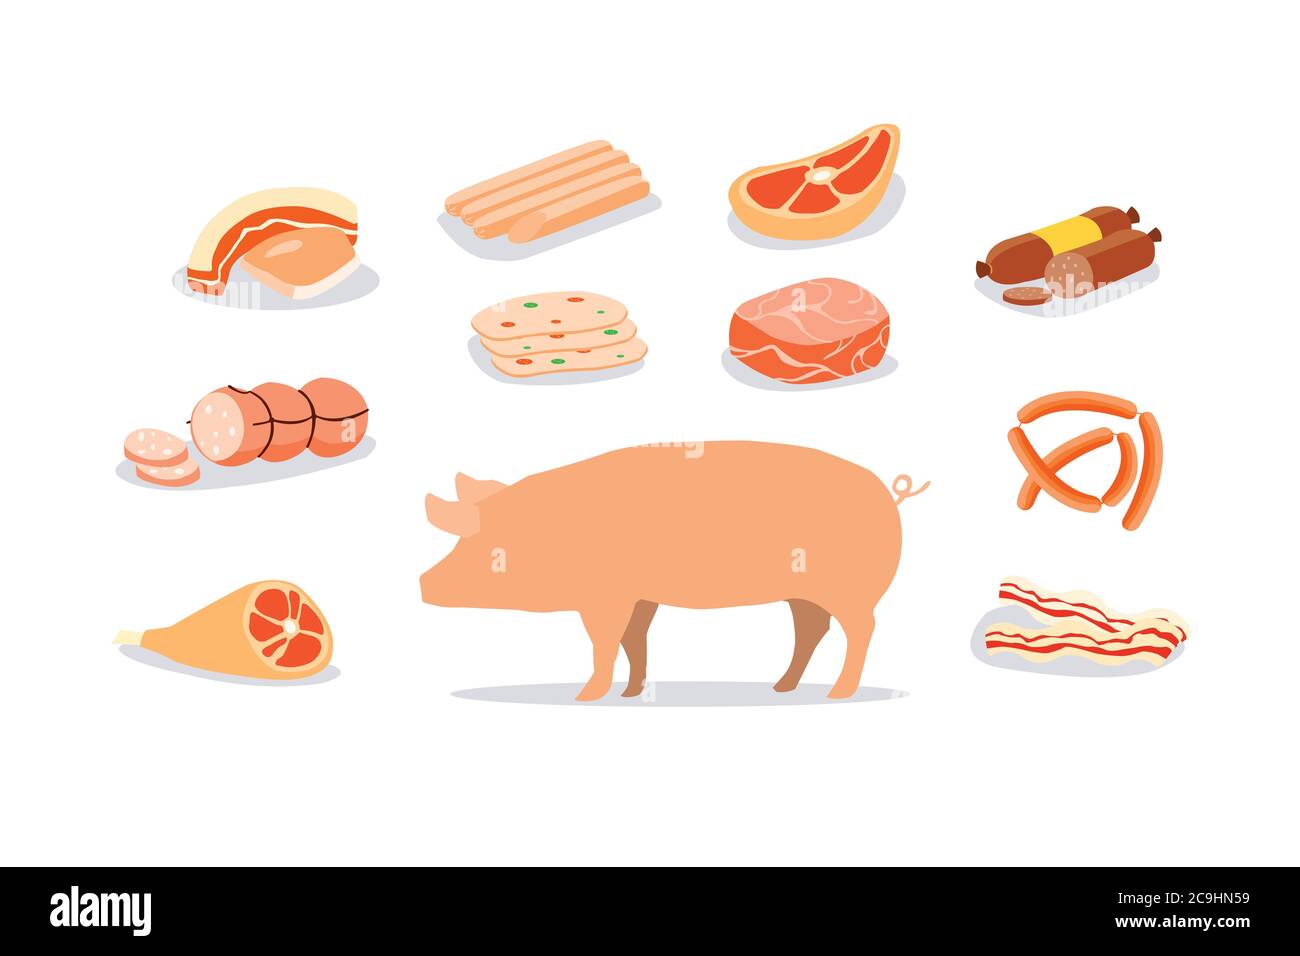 Schweinefleisch Produkte sind weit verbreitet konsumiert. Verarbeitete Produkte aus Schweinefleisch. Stock Vektor